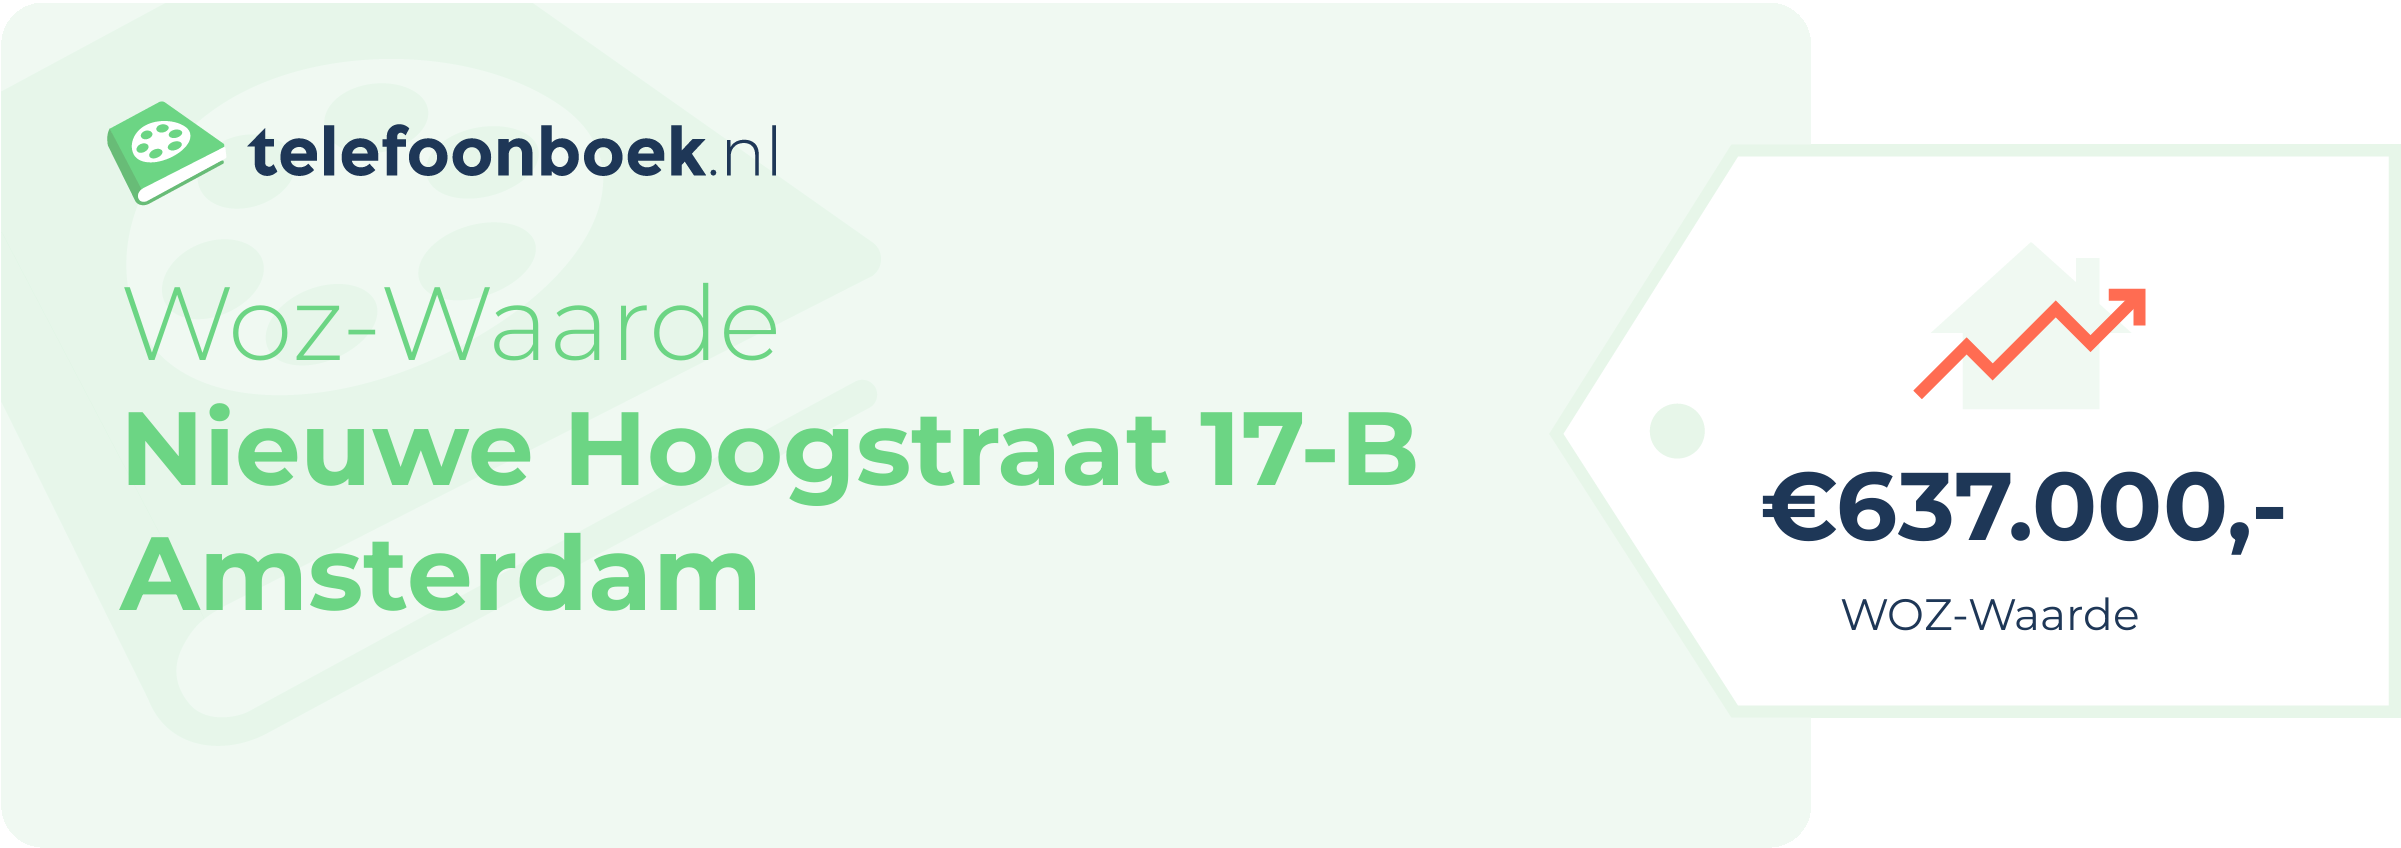 WOZ-waarde Nieuwe Hoogstraat 17-B Amsterdam